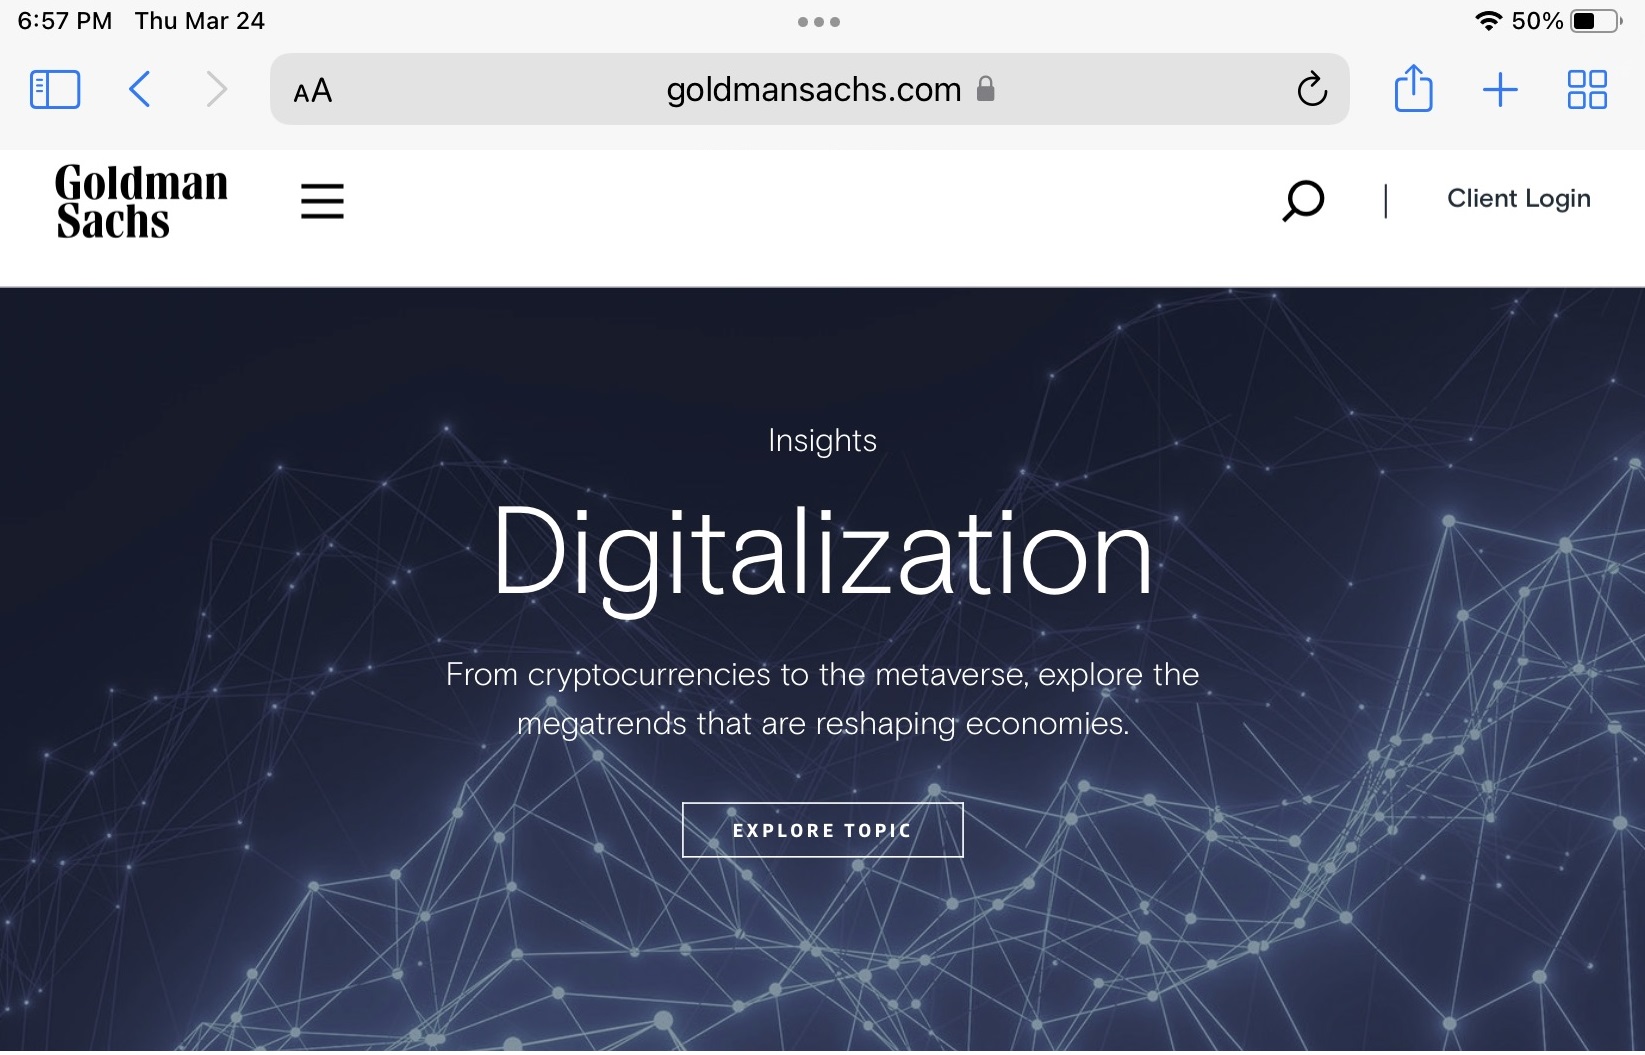 Goldman Sachs presenta criptomonedas, metaverso, digitalización en su página de inicio